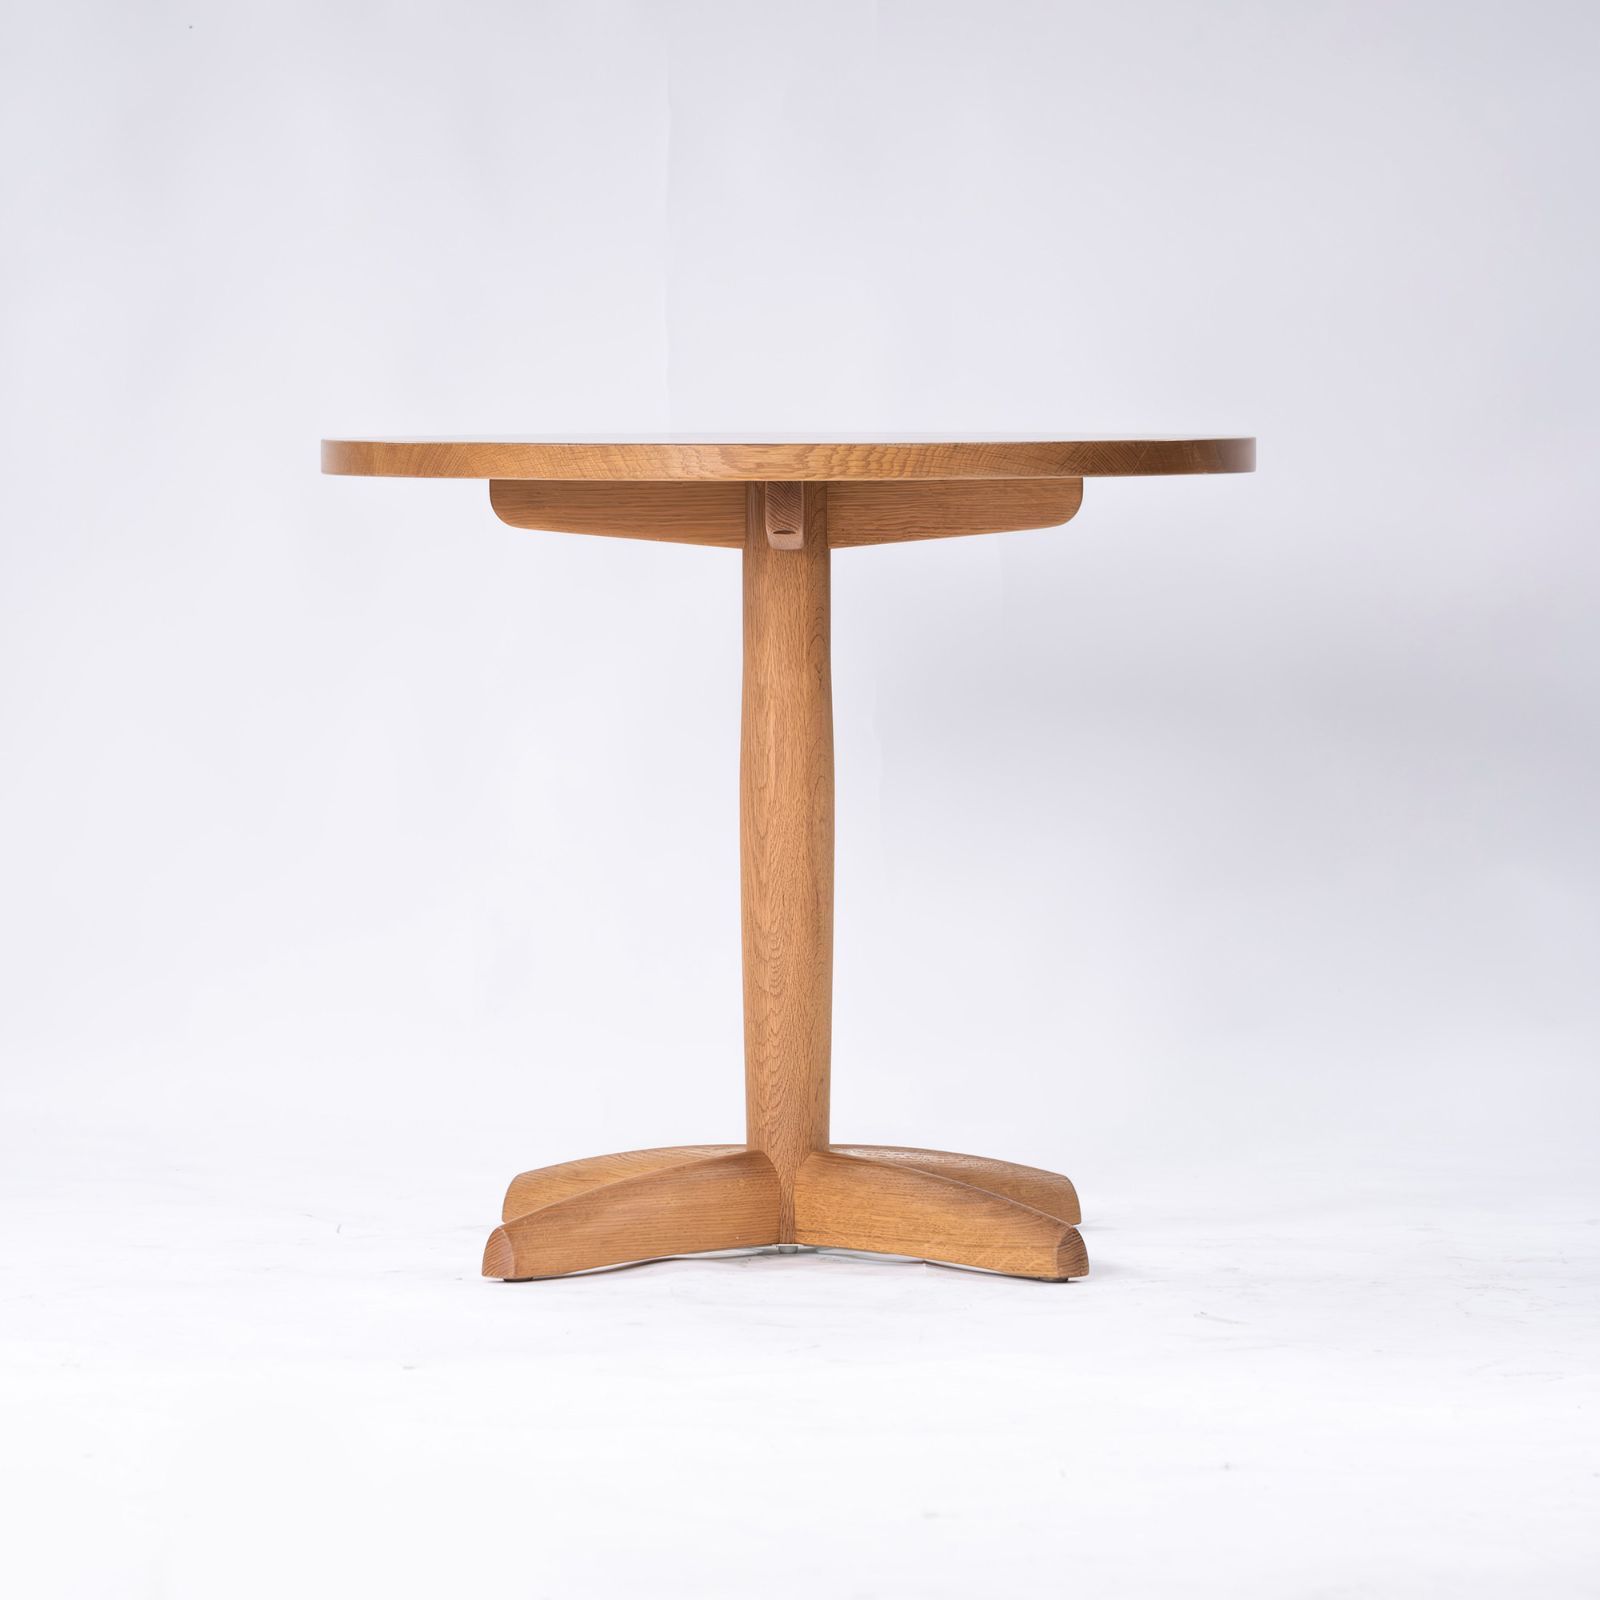 カフェテーブル 飛騨産業 キツツキ 侭 JIN ダイニングテーブル80 ホワイトオーク材 無垢材 ナチュラルモダン 和モダン 円形テーブル ラウンドテーブル